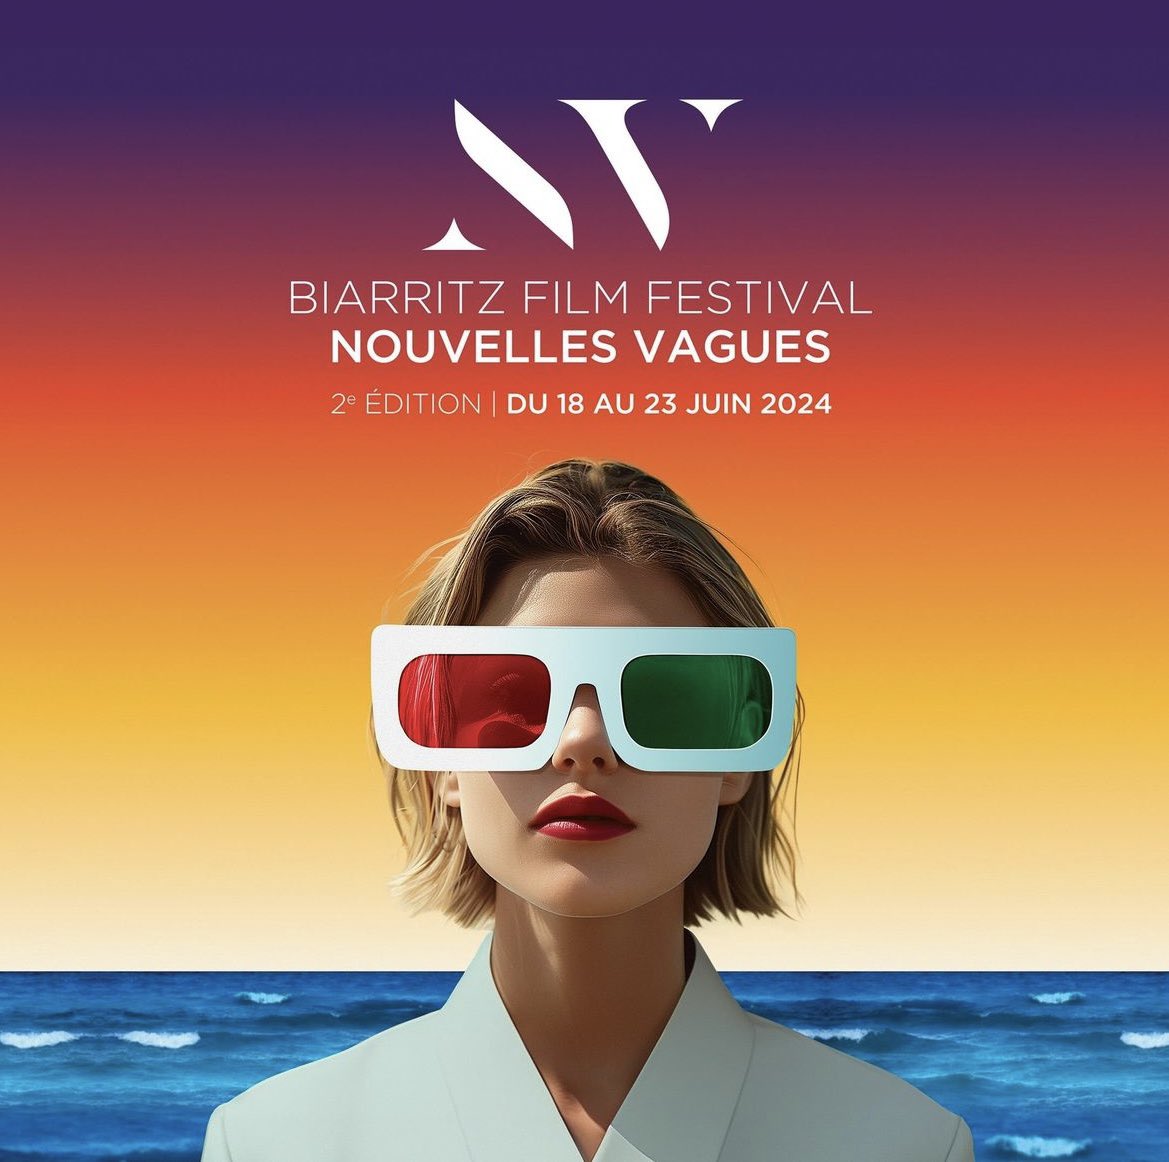 Voici les affiches officielles de la 2ème édition du Festival Nouvelles Vagues de Biarritz dédié aux films de la jeunesse 🎥 

On avait couvert le festival l’an dernier et on espère bien réitérer cette année en juin !